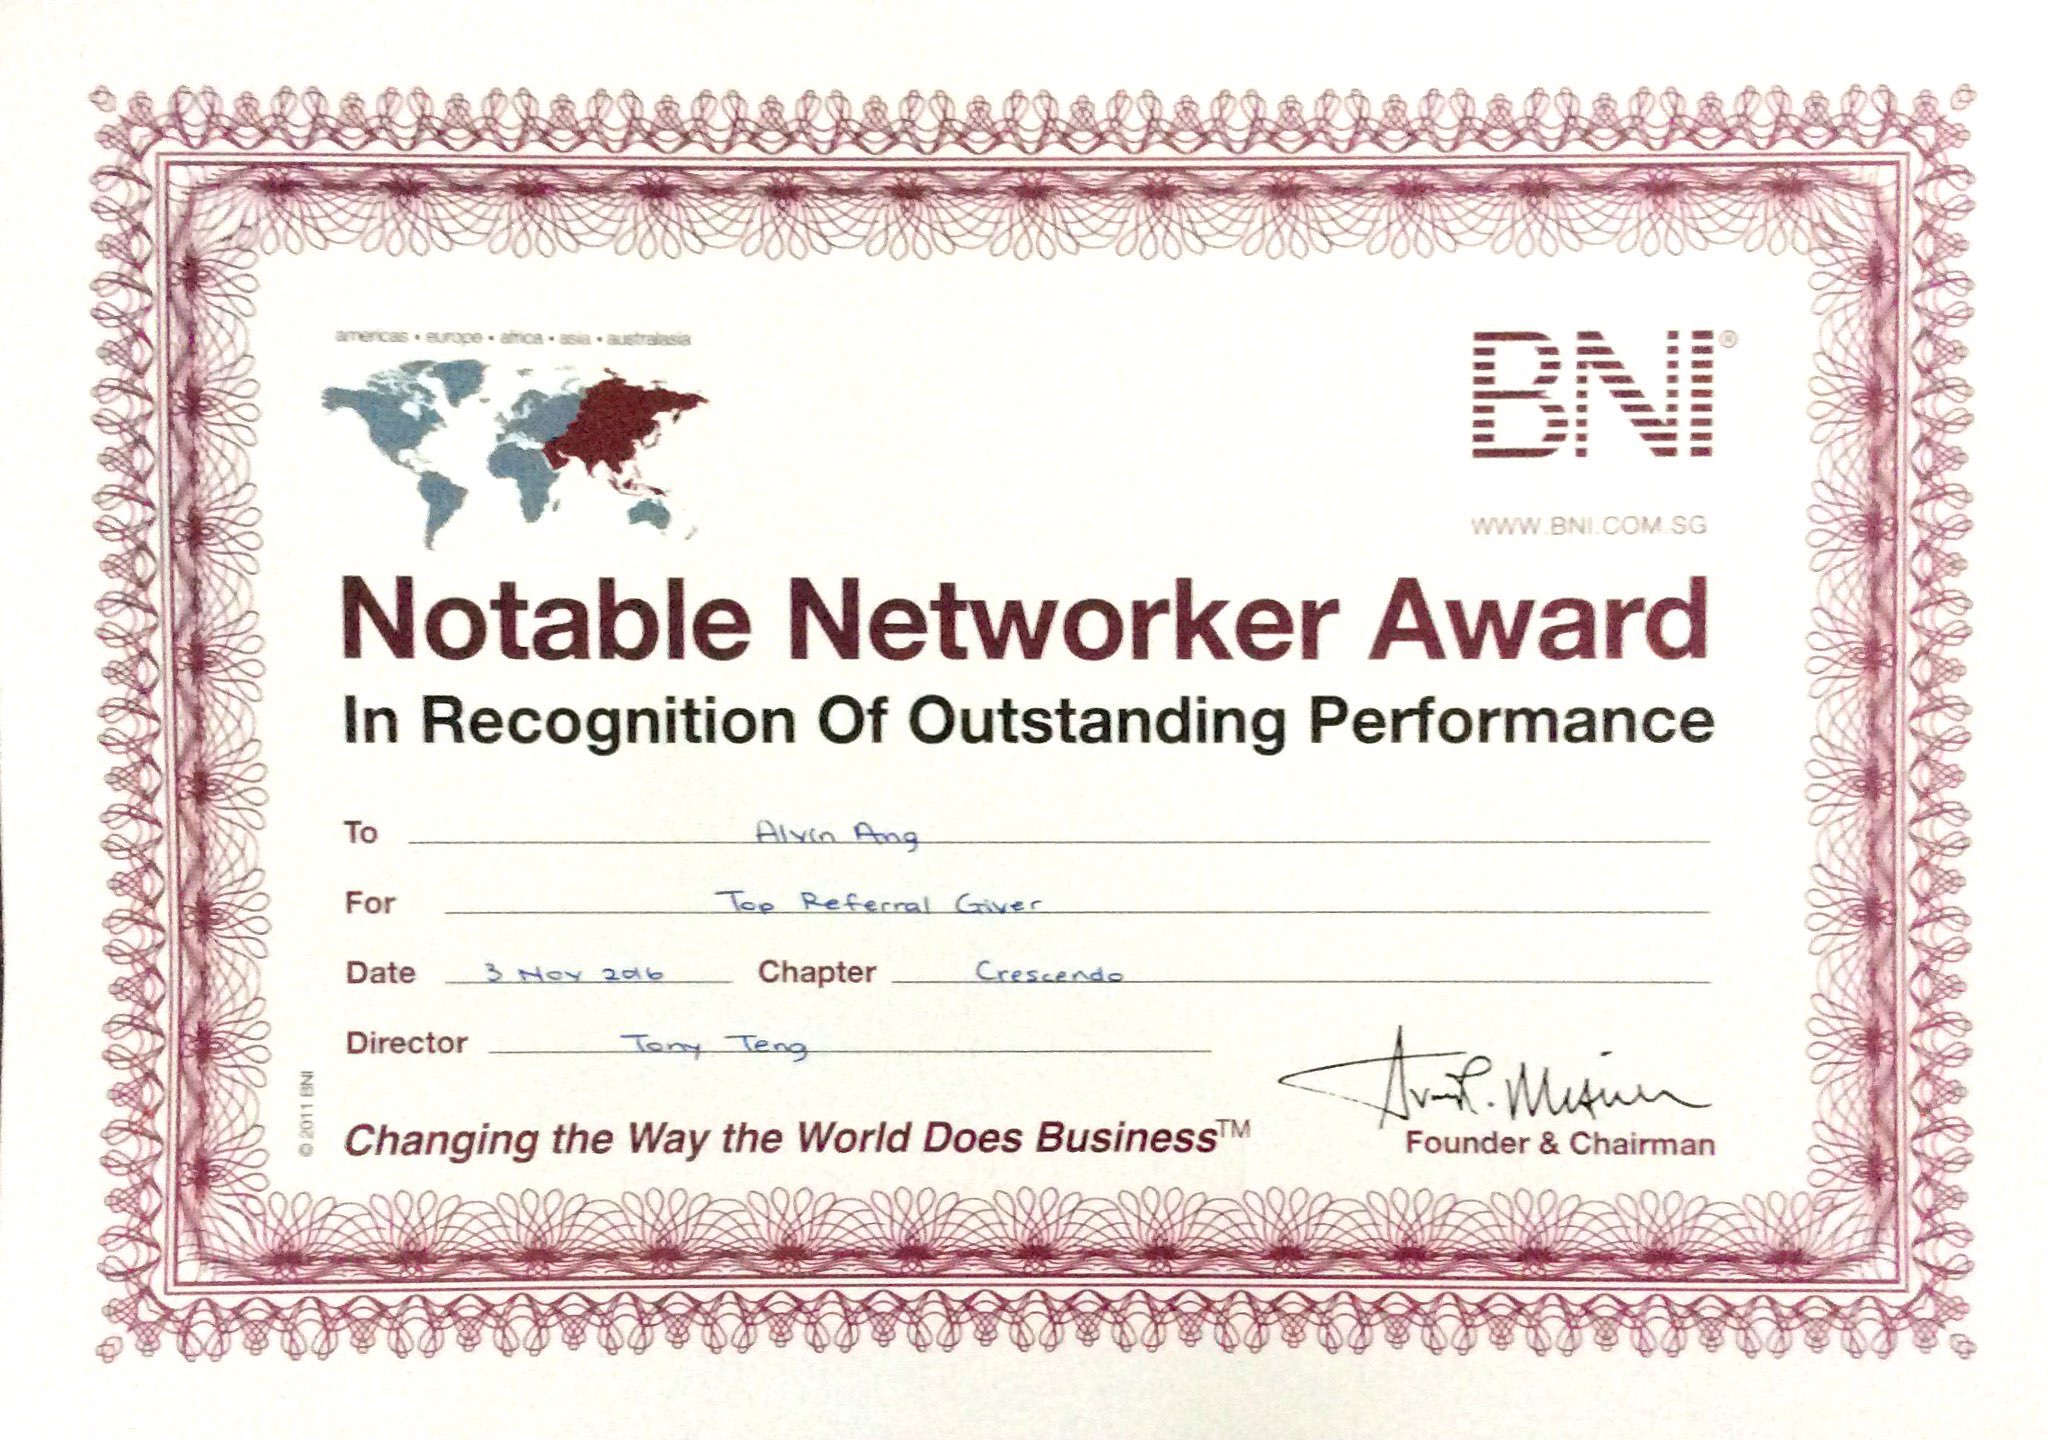 Alvin_s BNI award.jpg